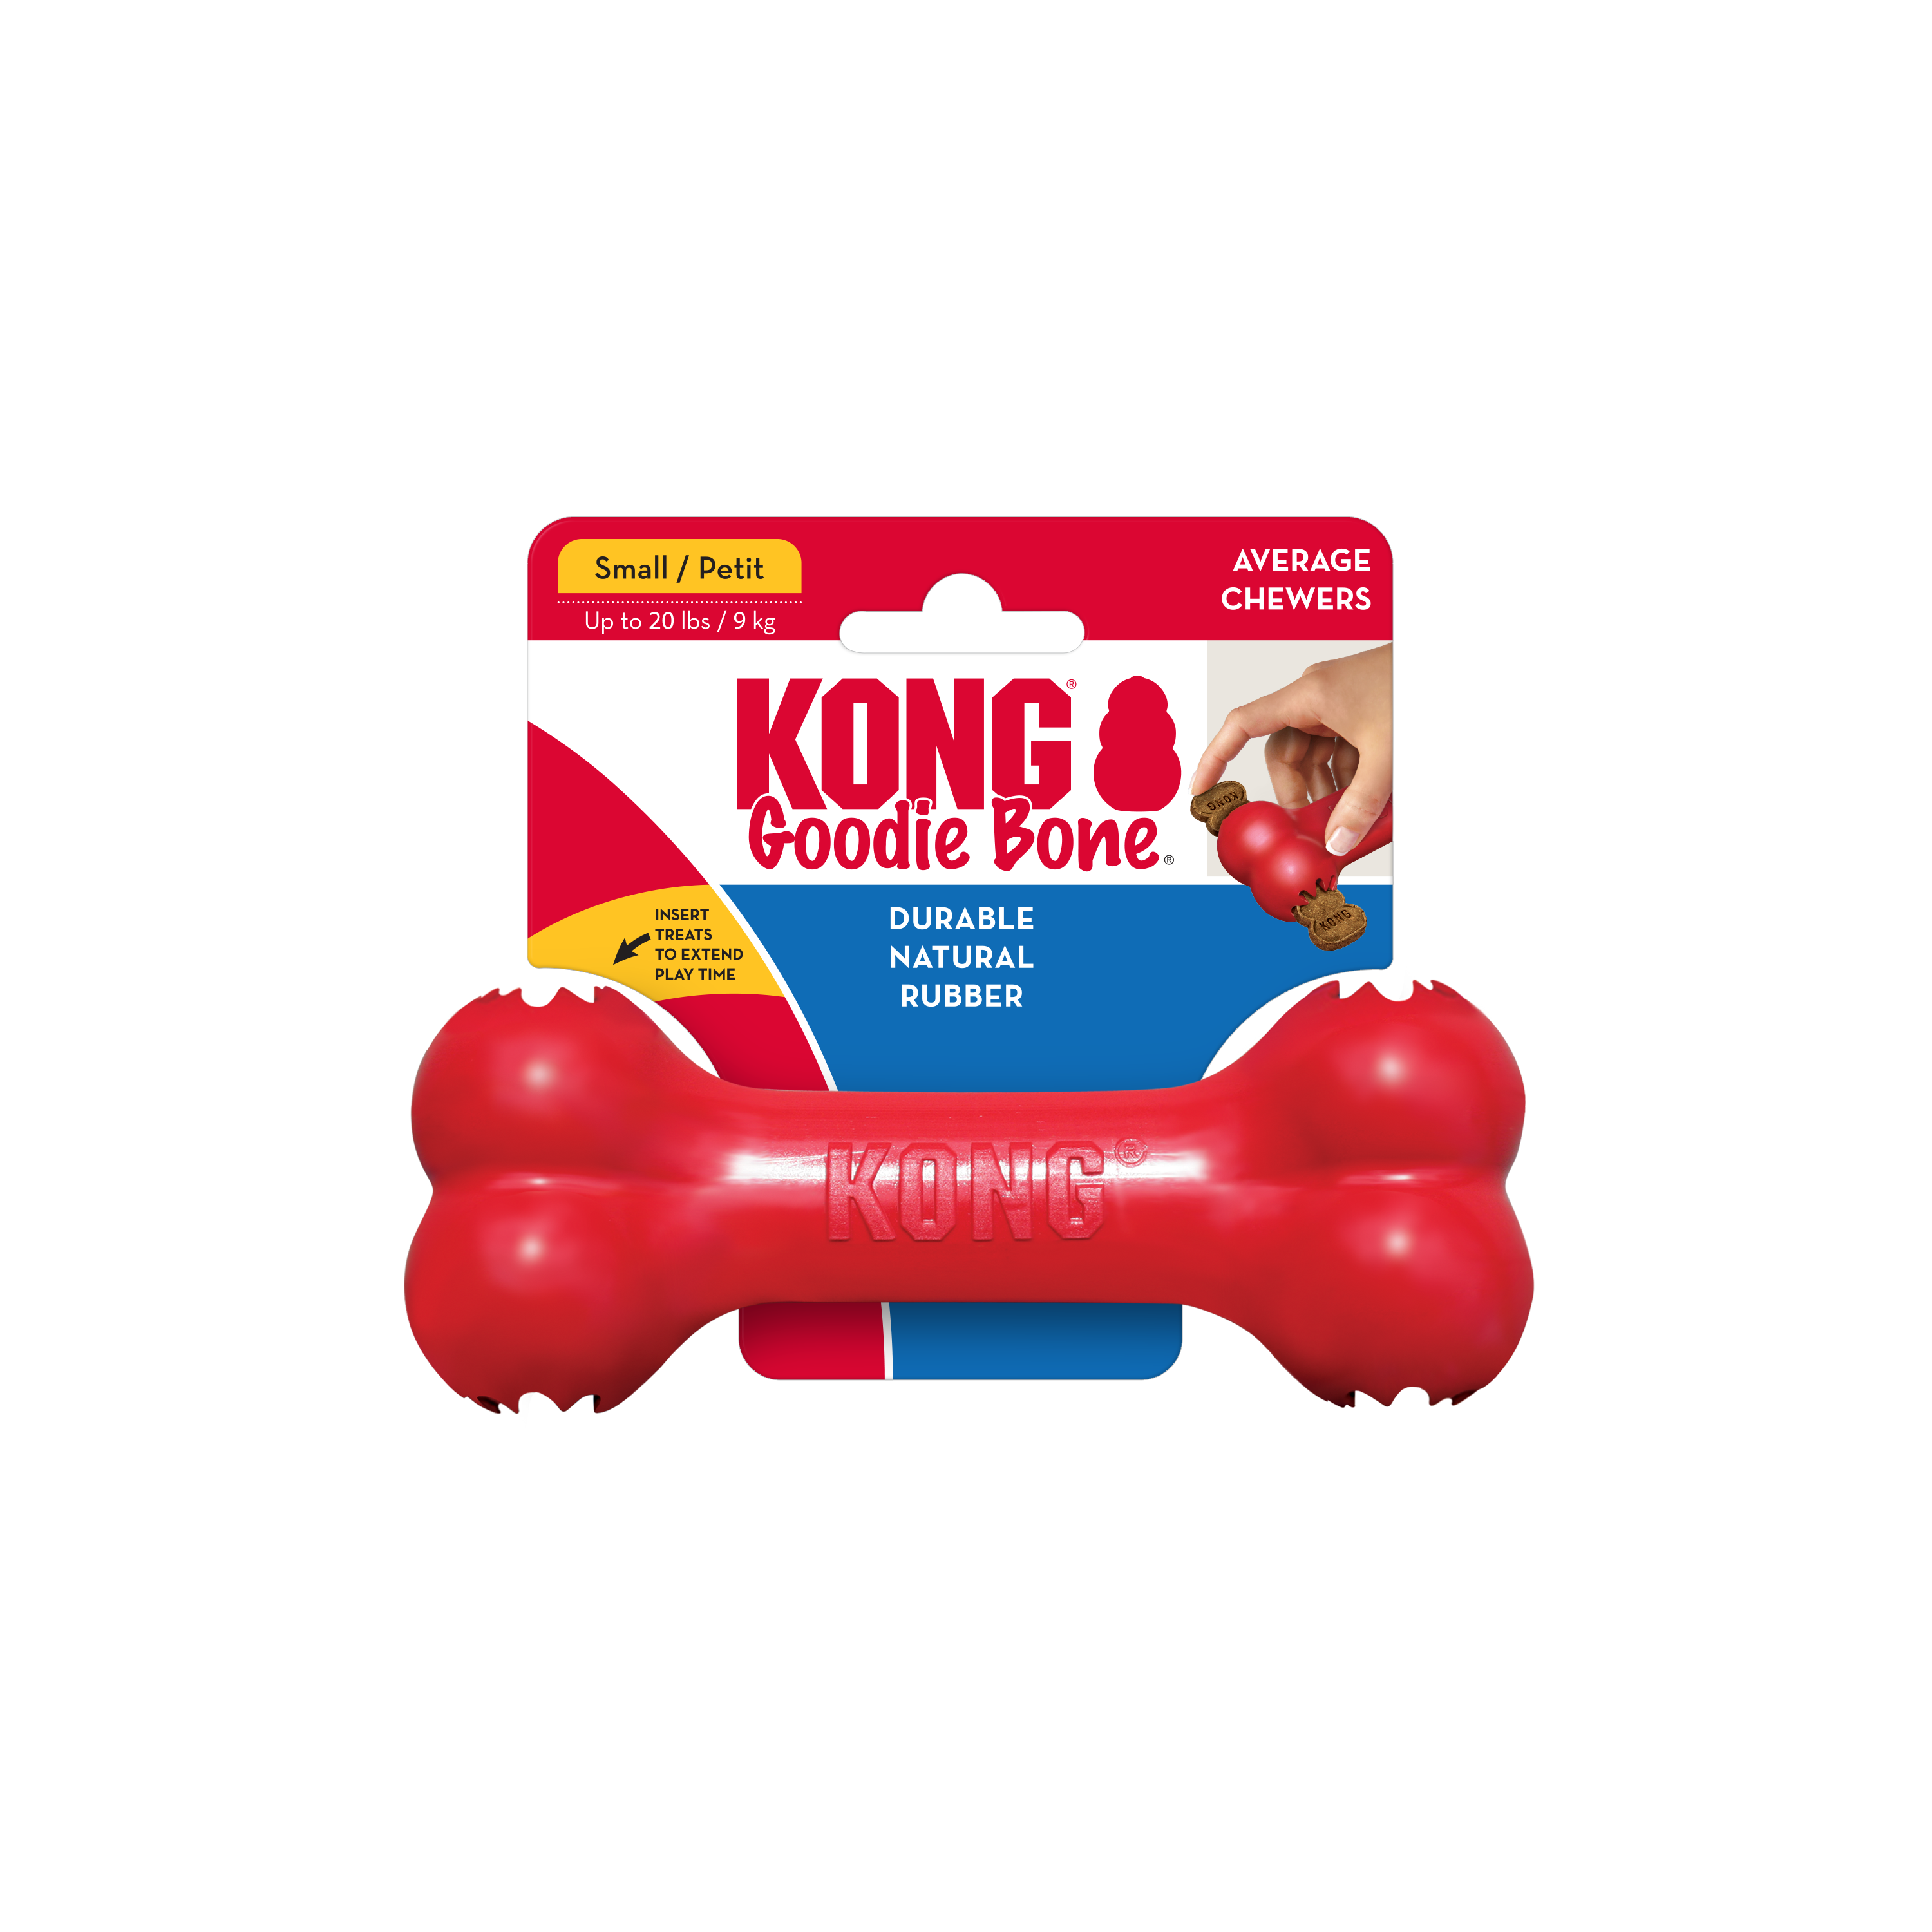 KONG Goodie Bone onpack termékkép